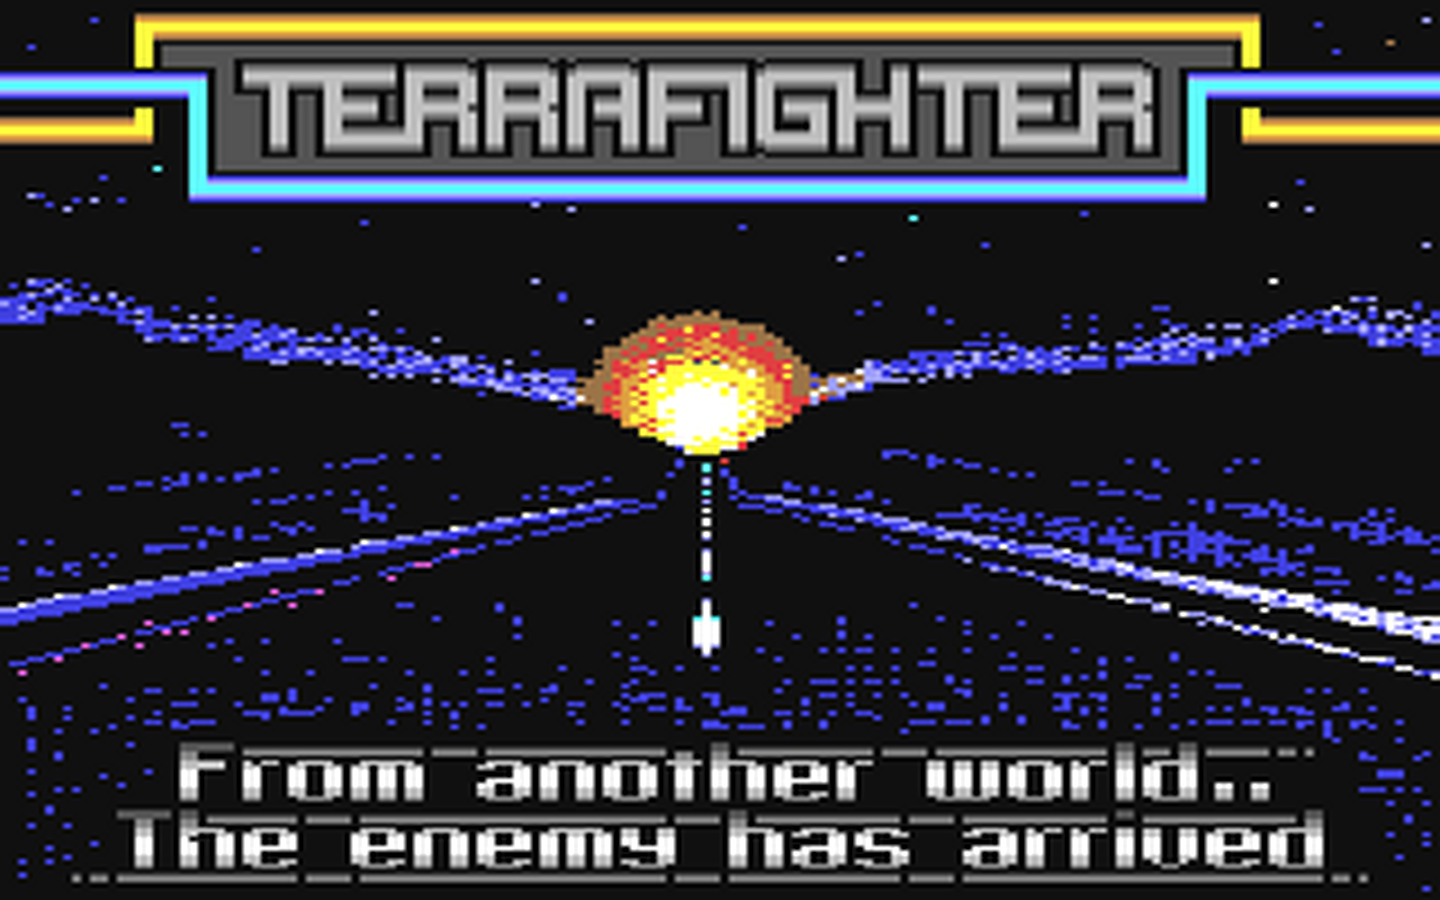 C64 GameBase Terrafighter Zeppelin_Games 1988